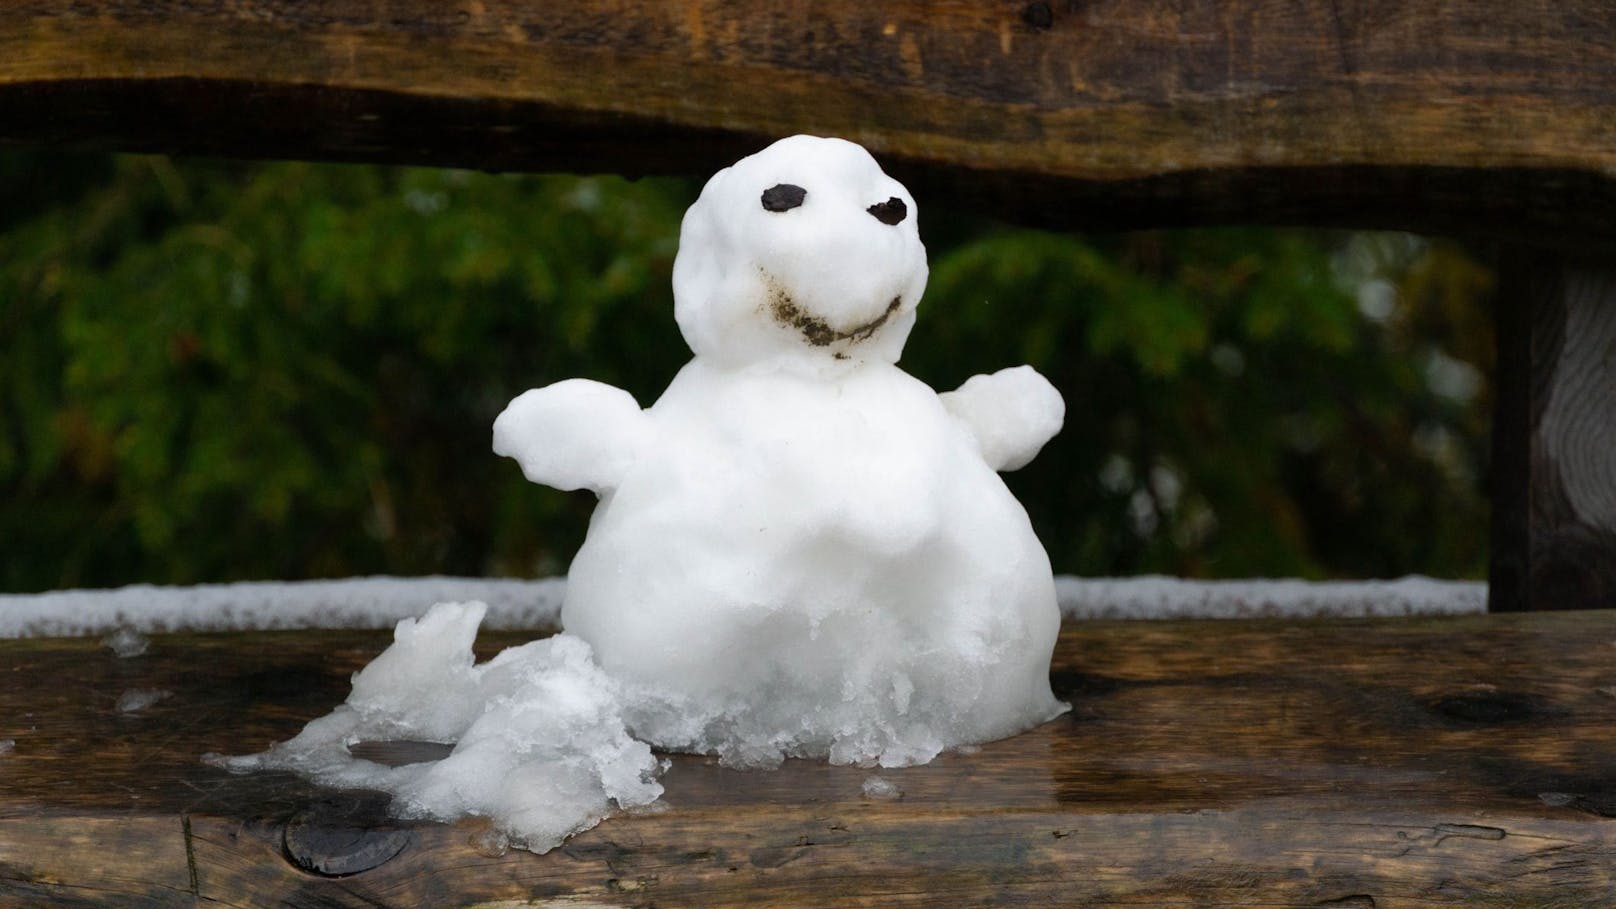 Wetter-Chaos: Jetzt steht in Wien schon ein Schneemann